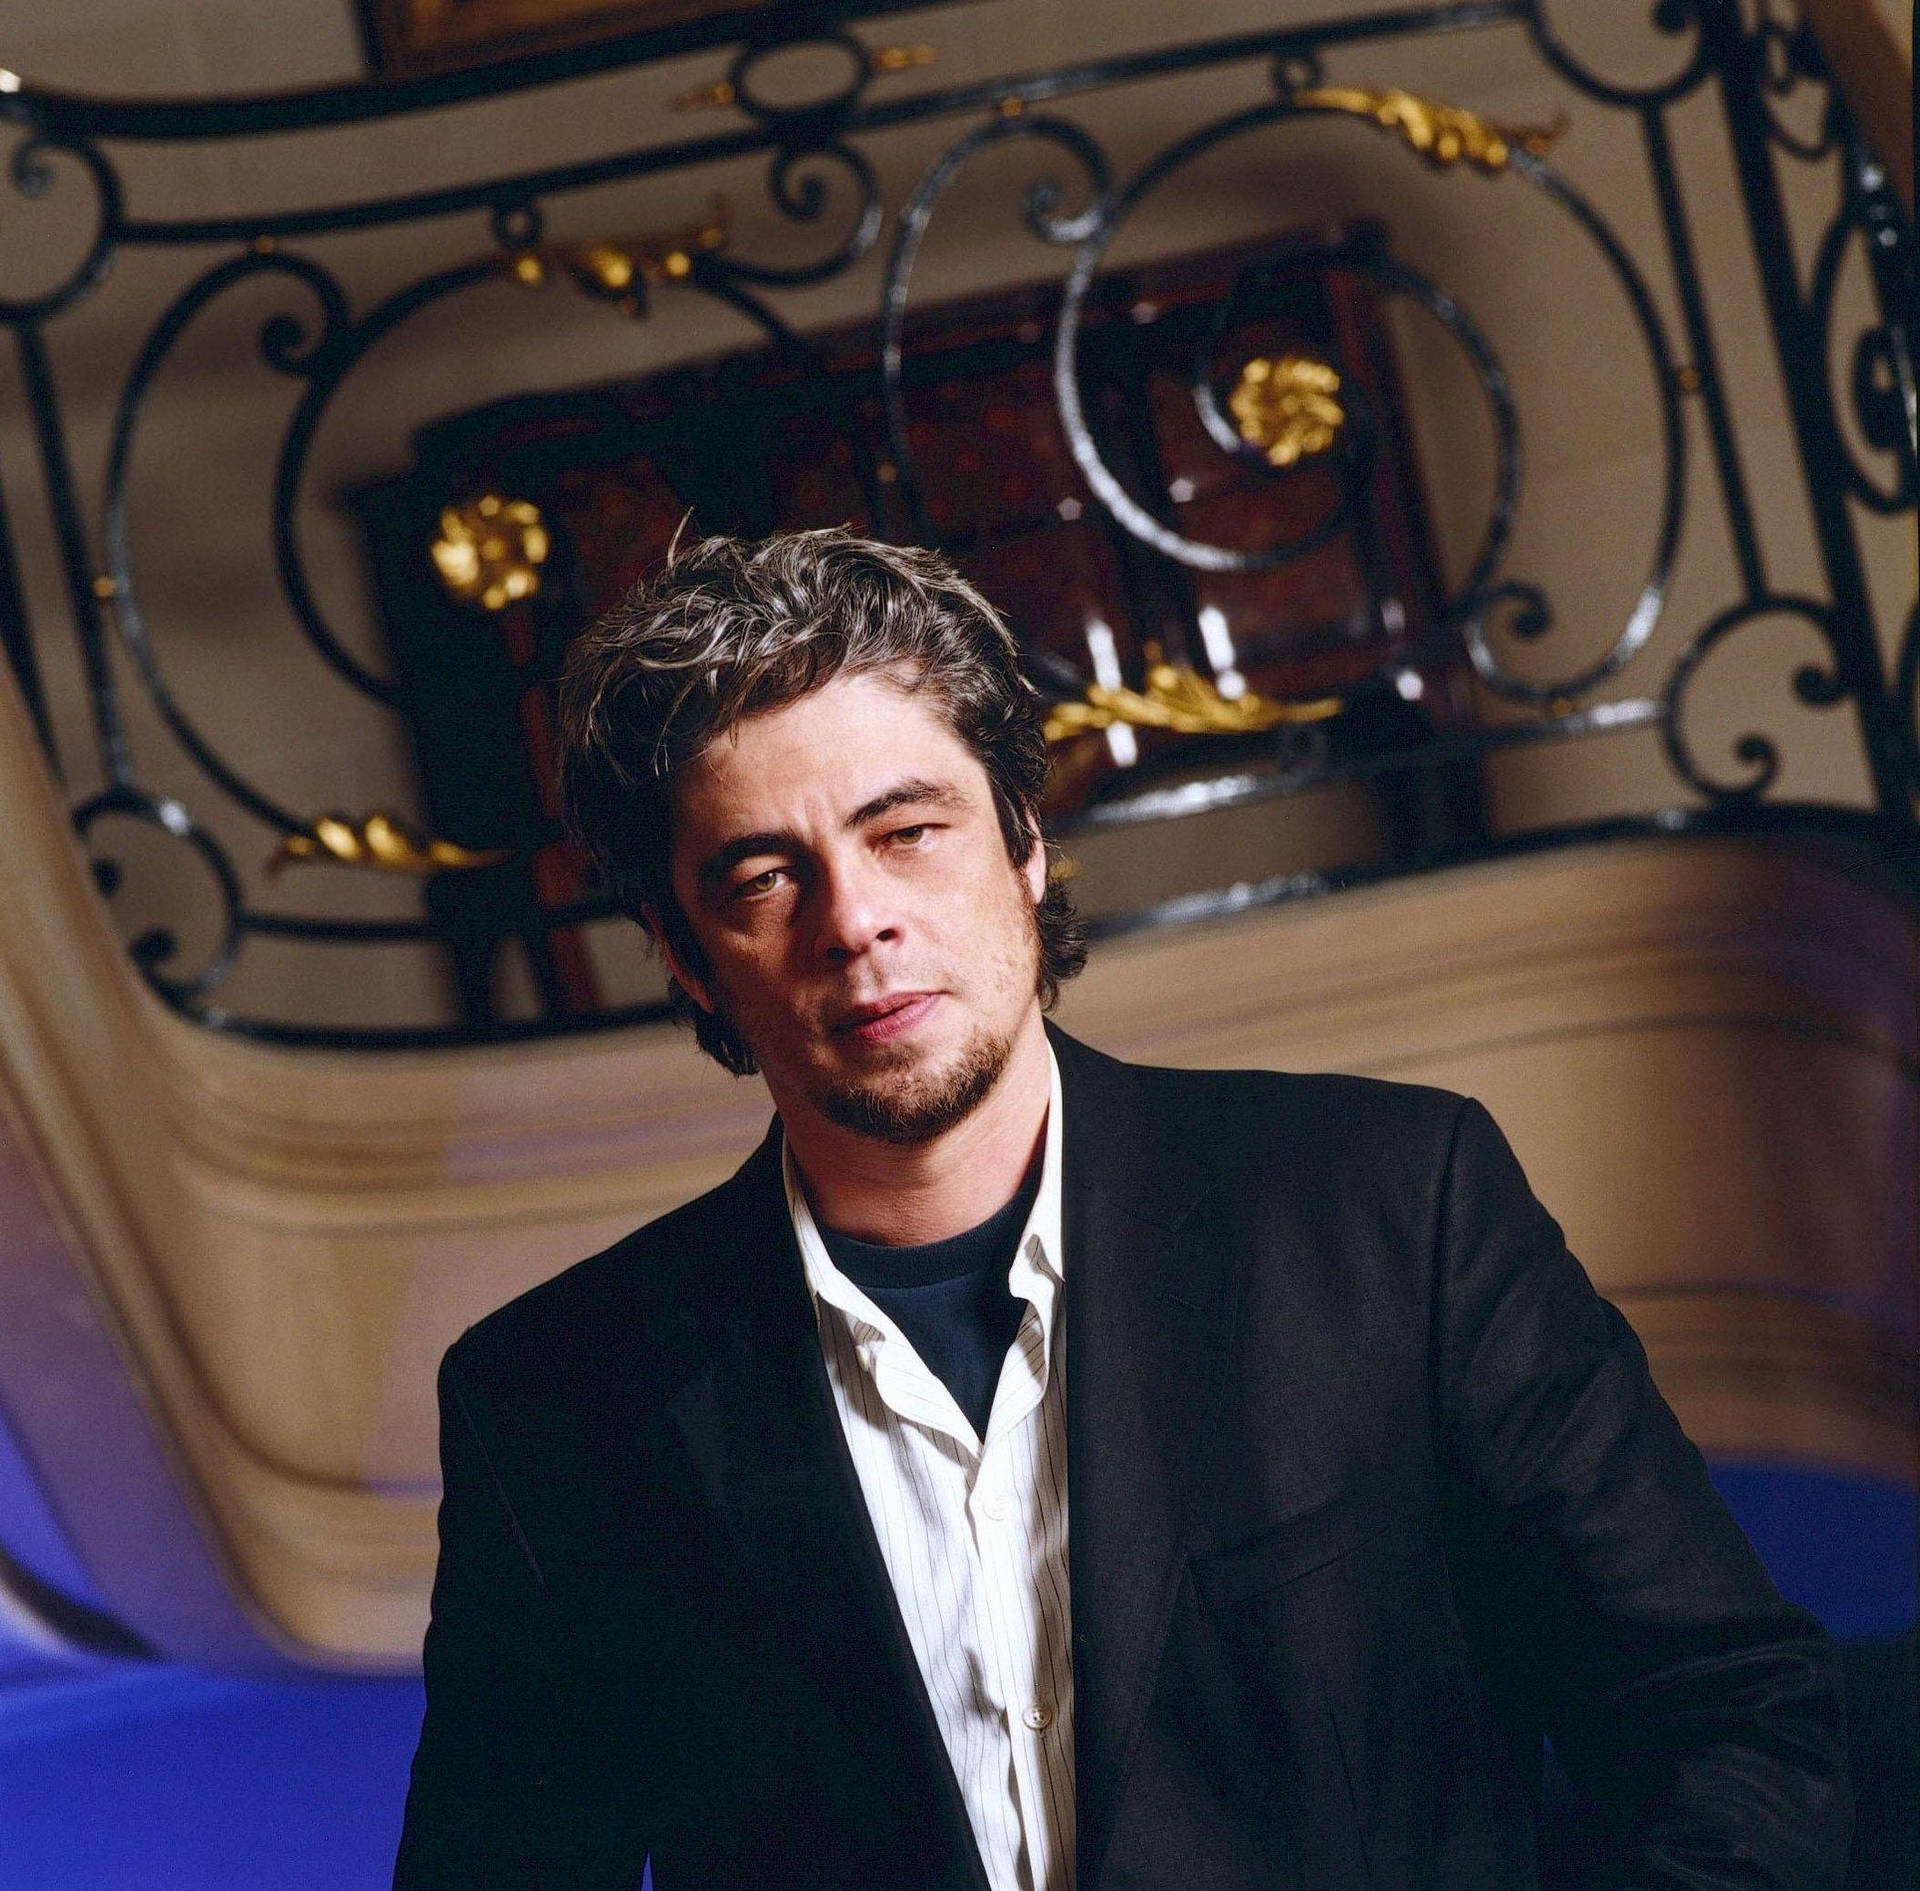 Benicio Del Toro 2006 10th Annual Hollywood Awards Picture